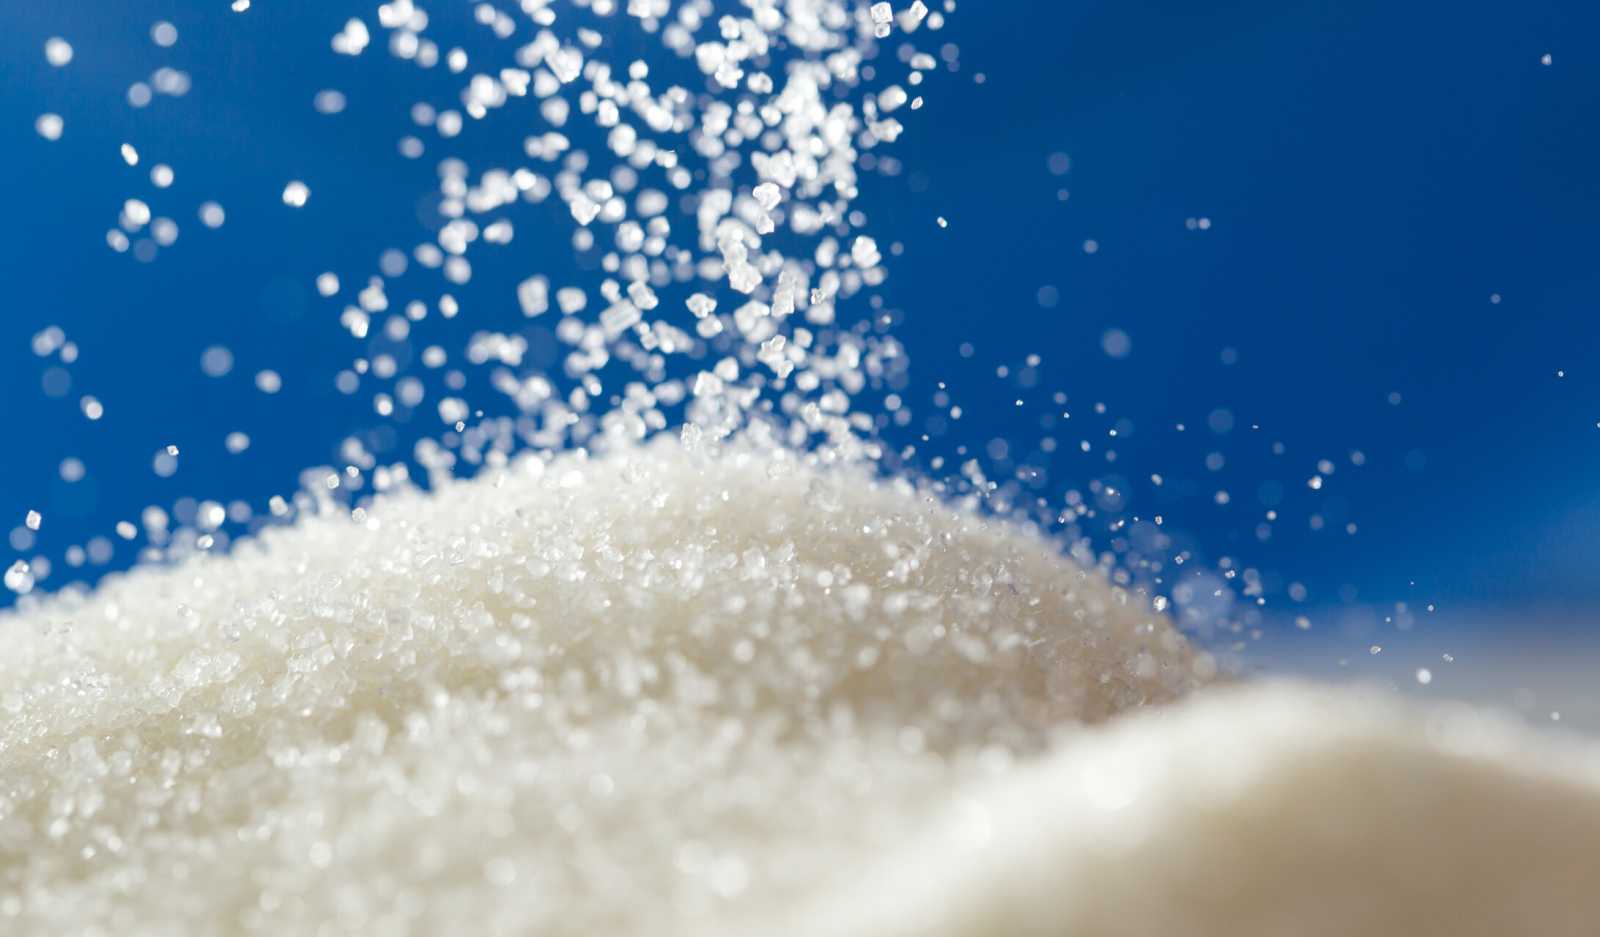 Úgy tűnik, nem éri meg cukrot gyártani Erdélyben | Fotó: AdobeStock